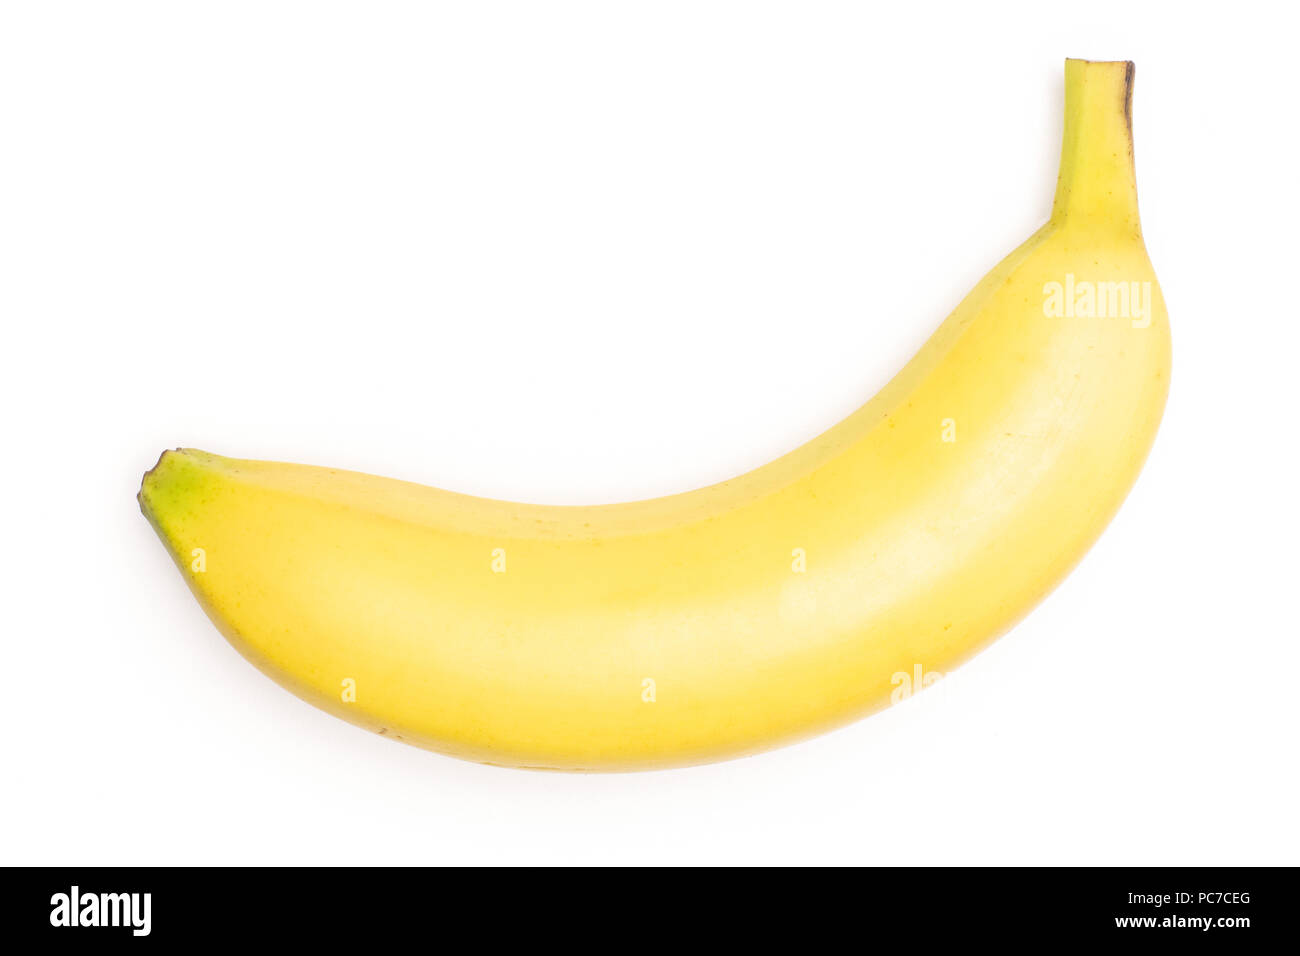 One whole fresh yellow banana flatlay isolated on white background Stock Photo